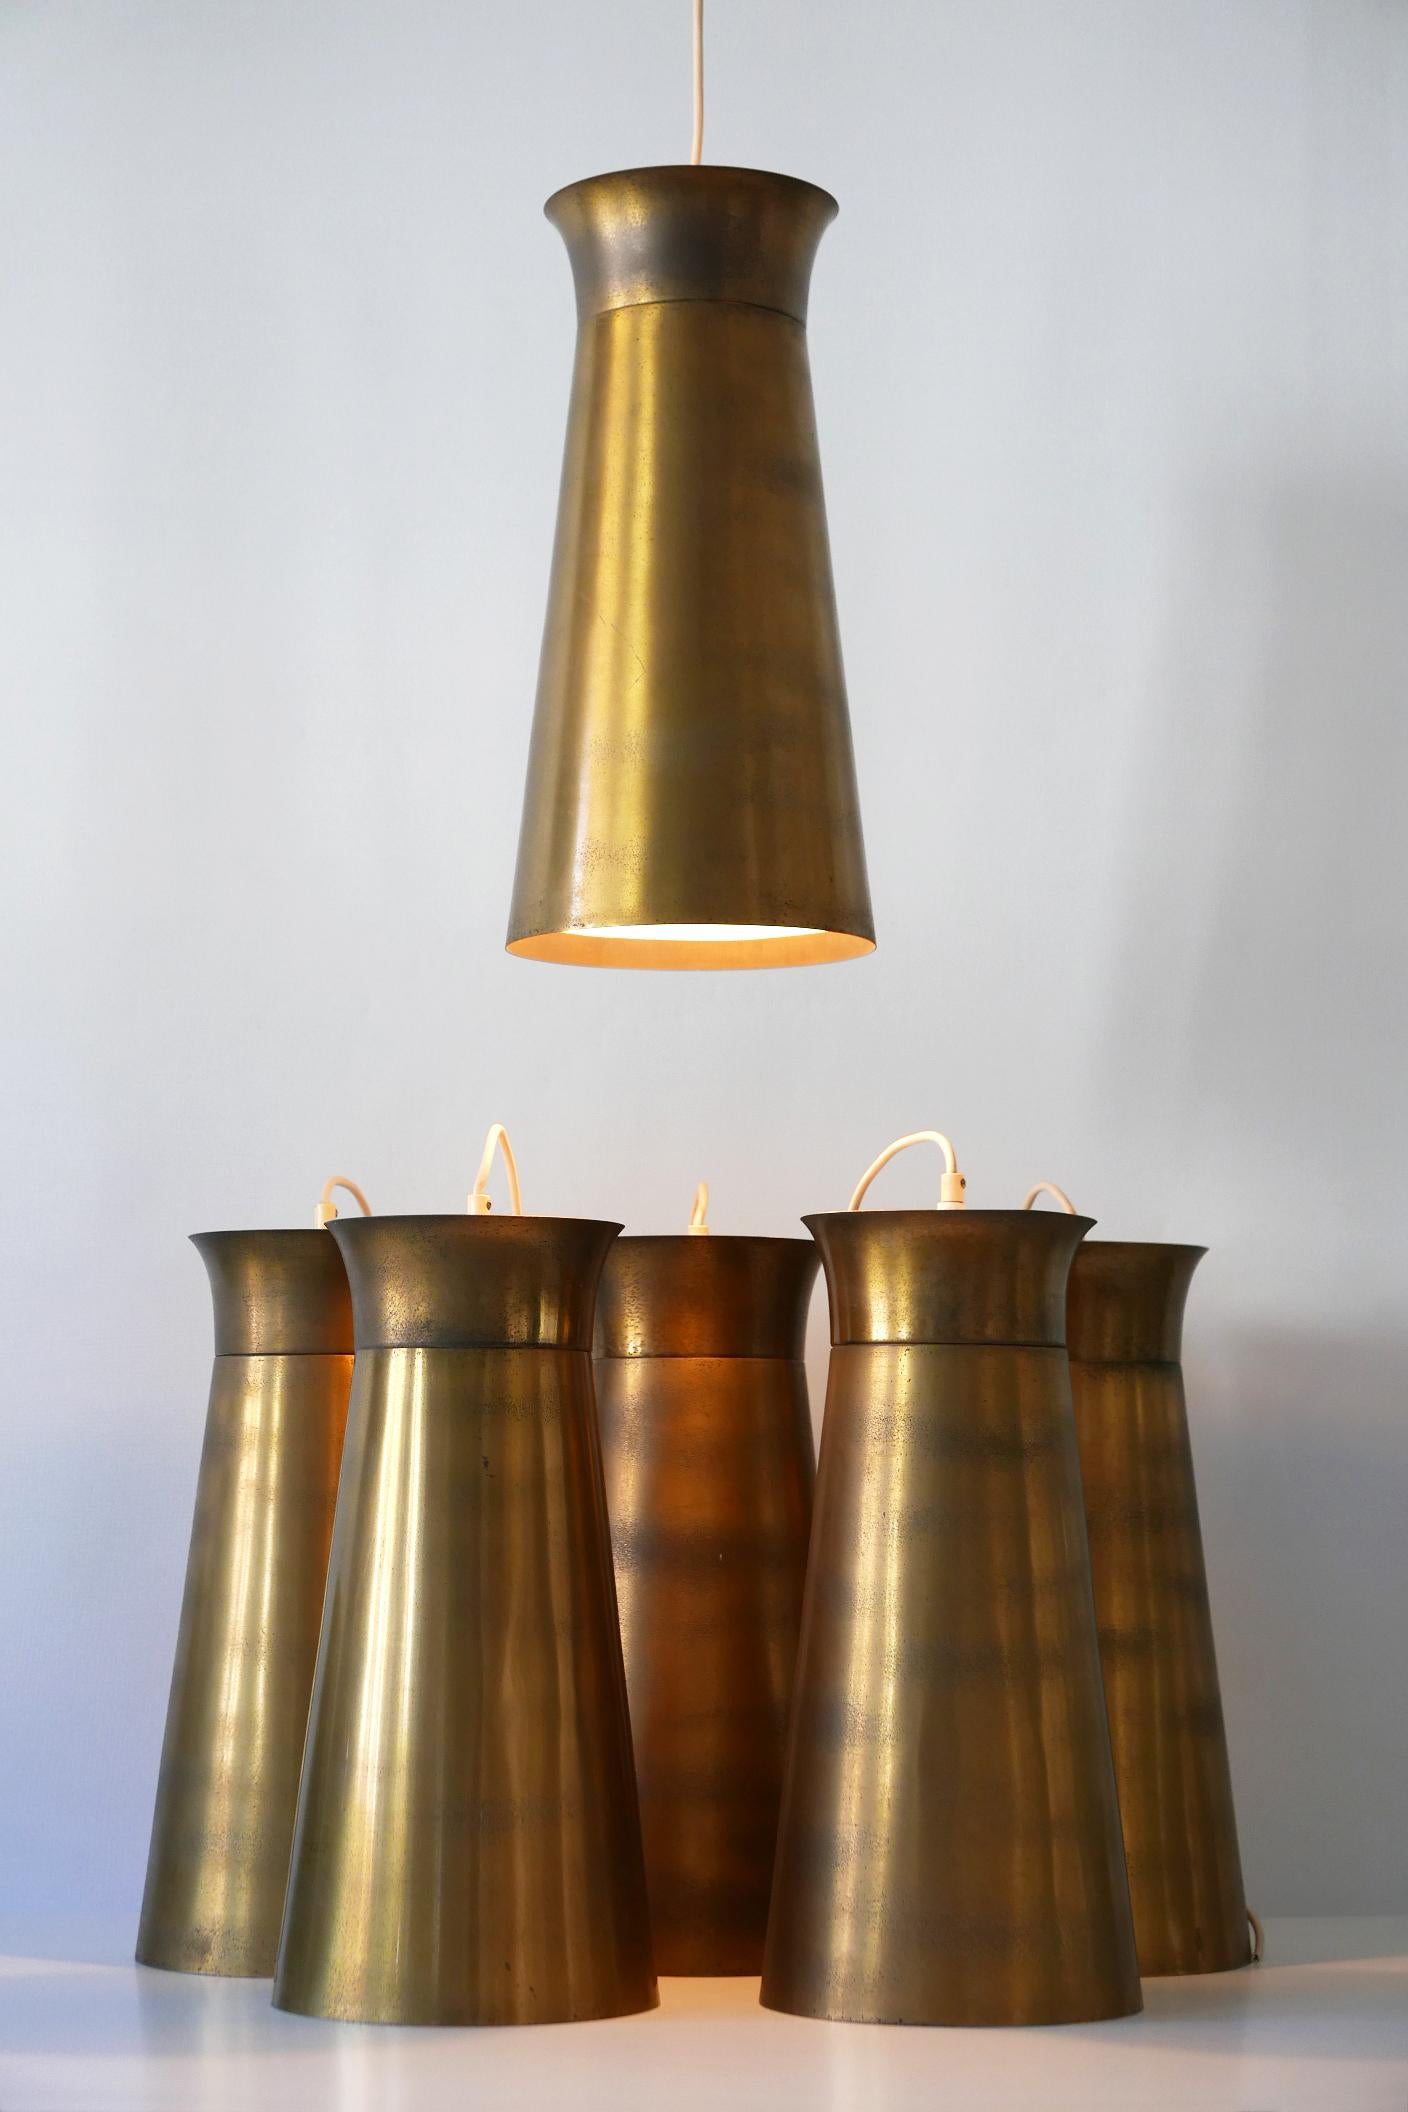 Elegante Mid-Century Modern Messing Pendelleuchten oder Hängelampen. Entworfen und hergestellt in Deutschland, 1950er Jahre. Sechs identische Lampen verfügbar!

Jede Lampe ist aus Messingblech gefertigt, wird mit 1 x E27 Edison-Schraubfassung